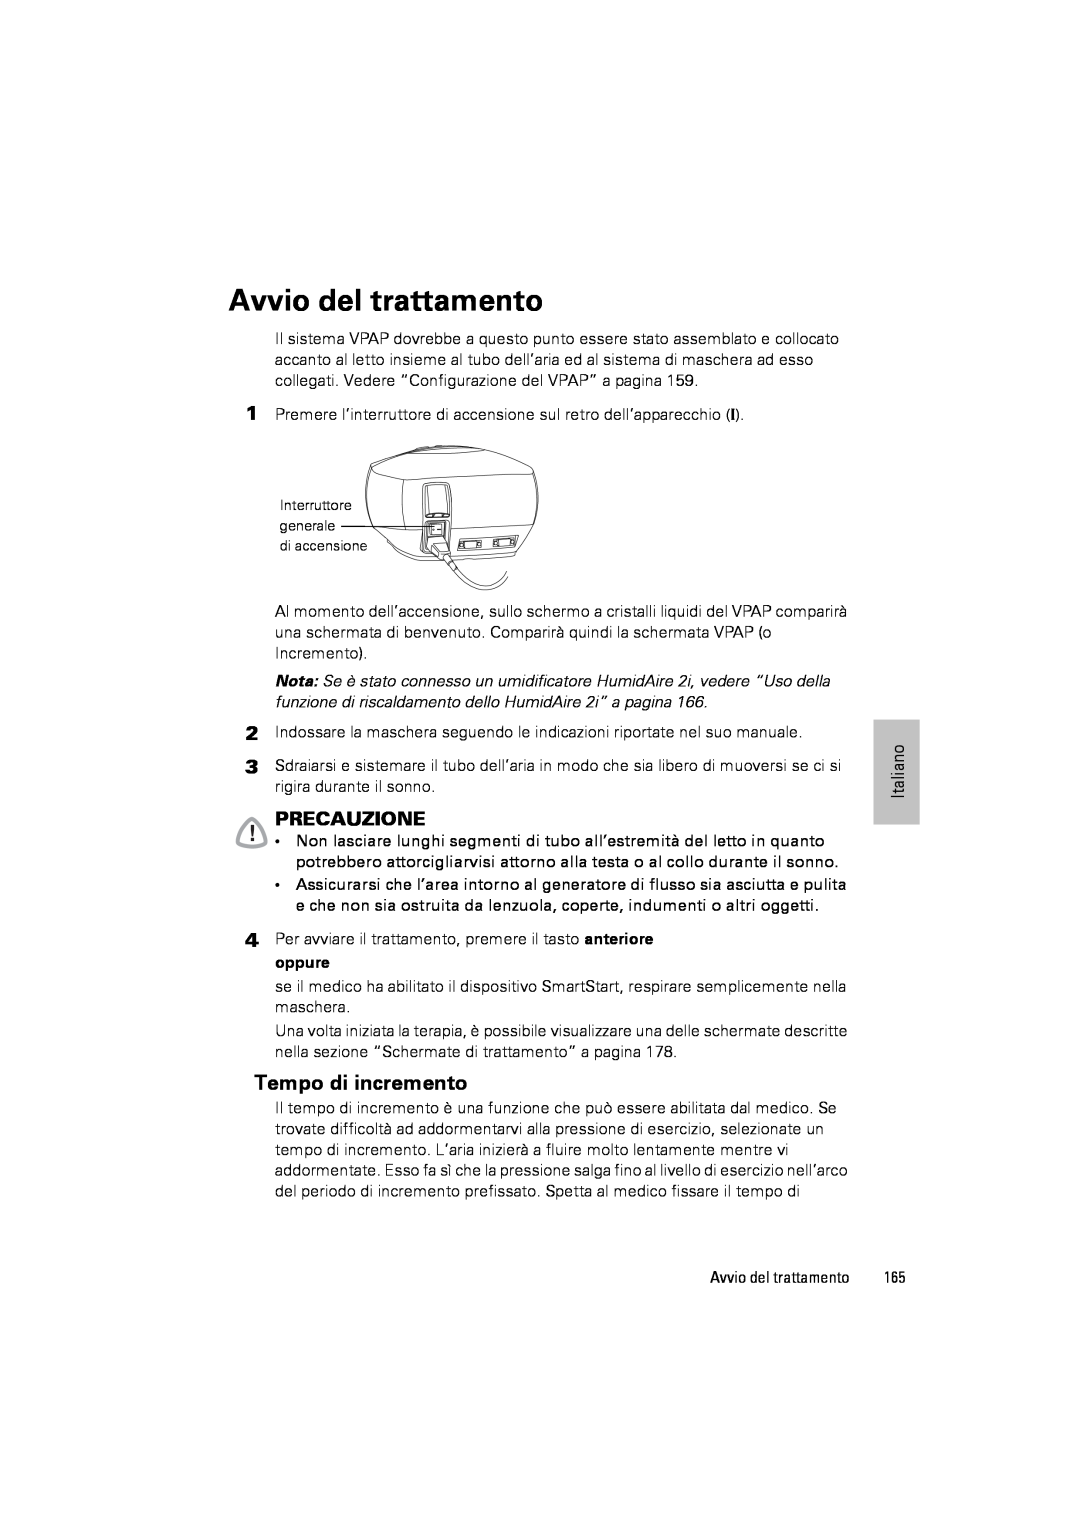 ResMed III & III ST user manual Avvio del trattamento, Tempo di incremento, Precauzione 